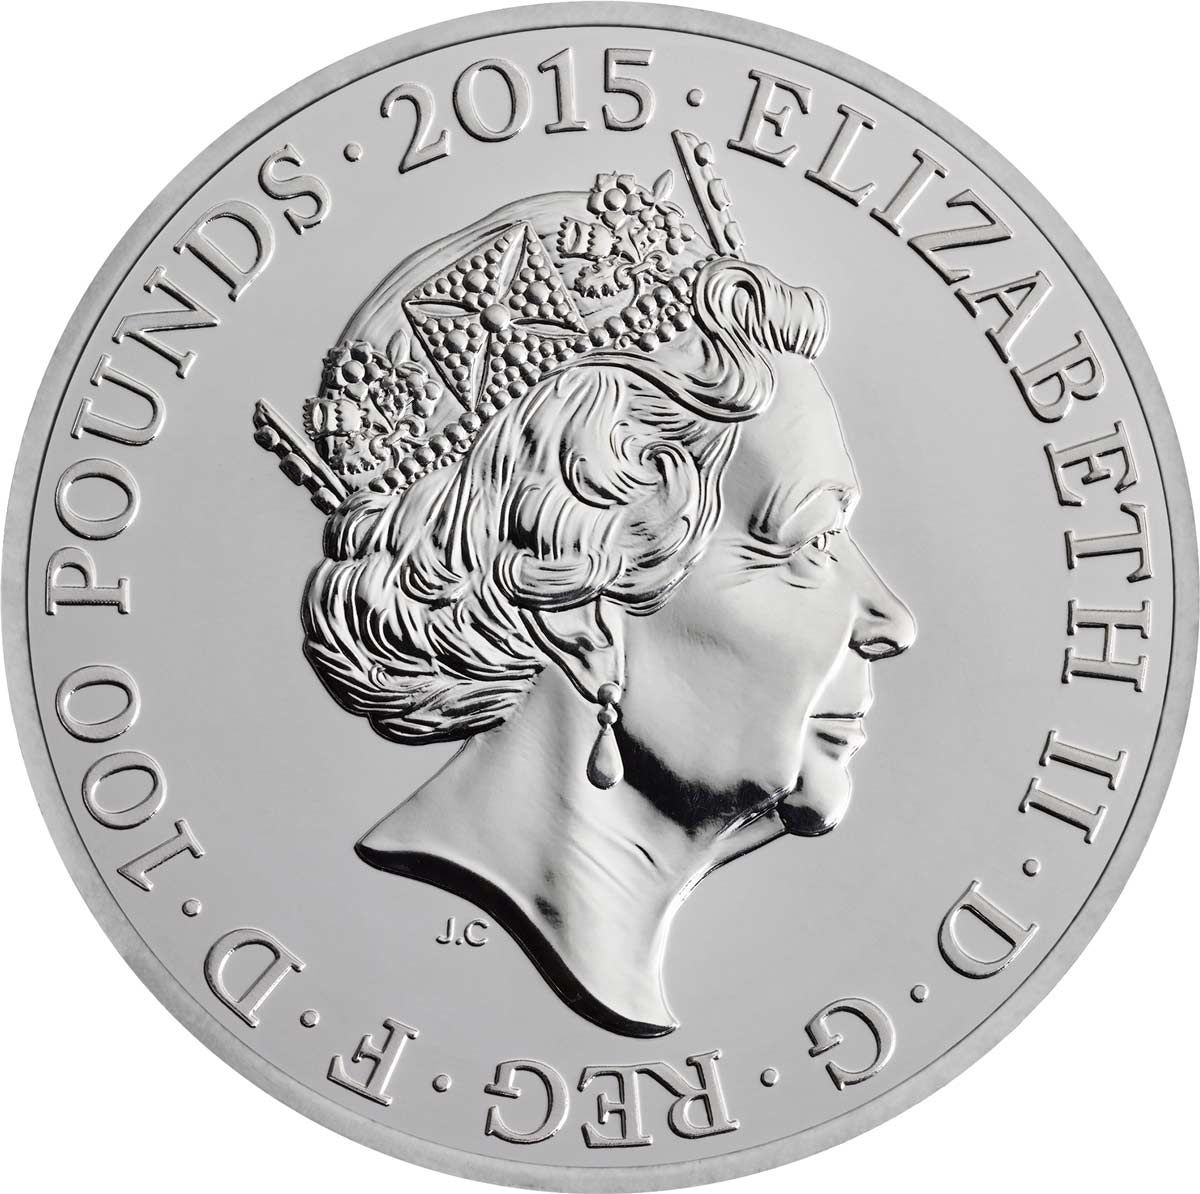 Аверс монеты "Букингемский дворец"